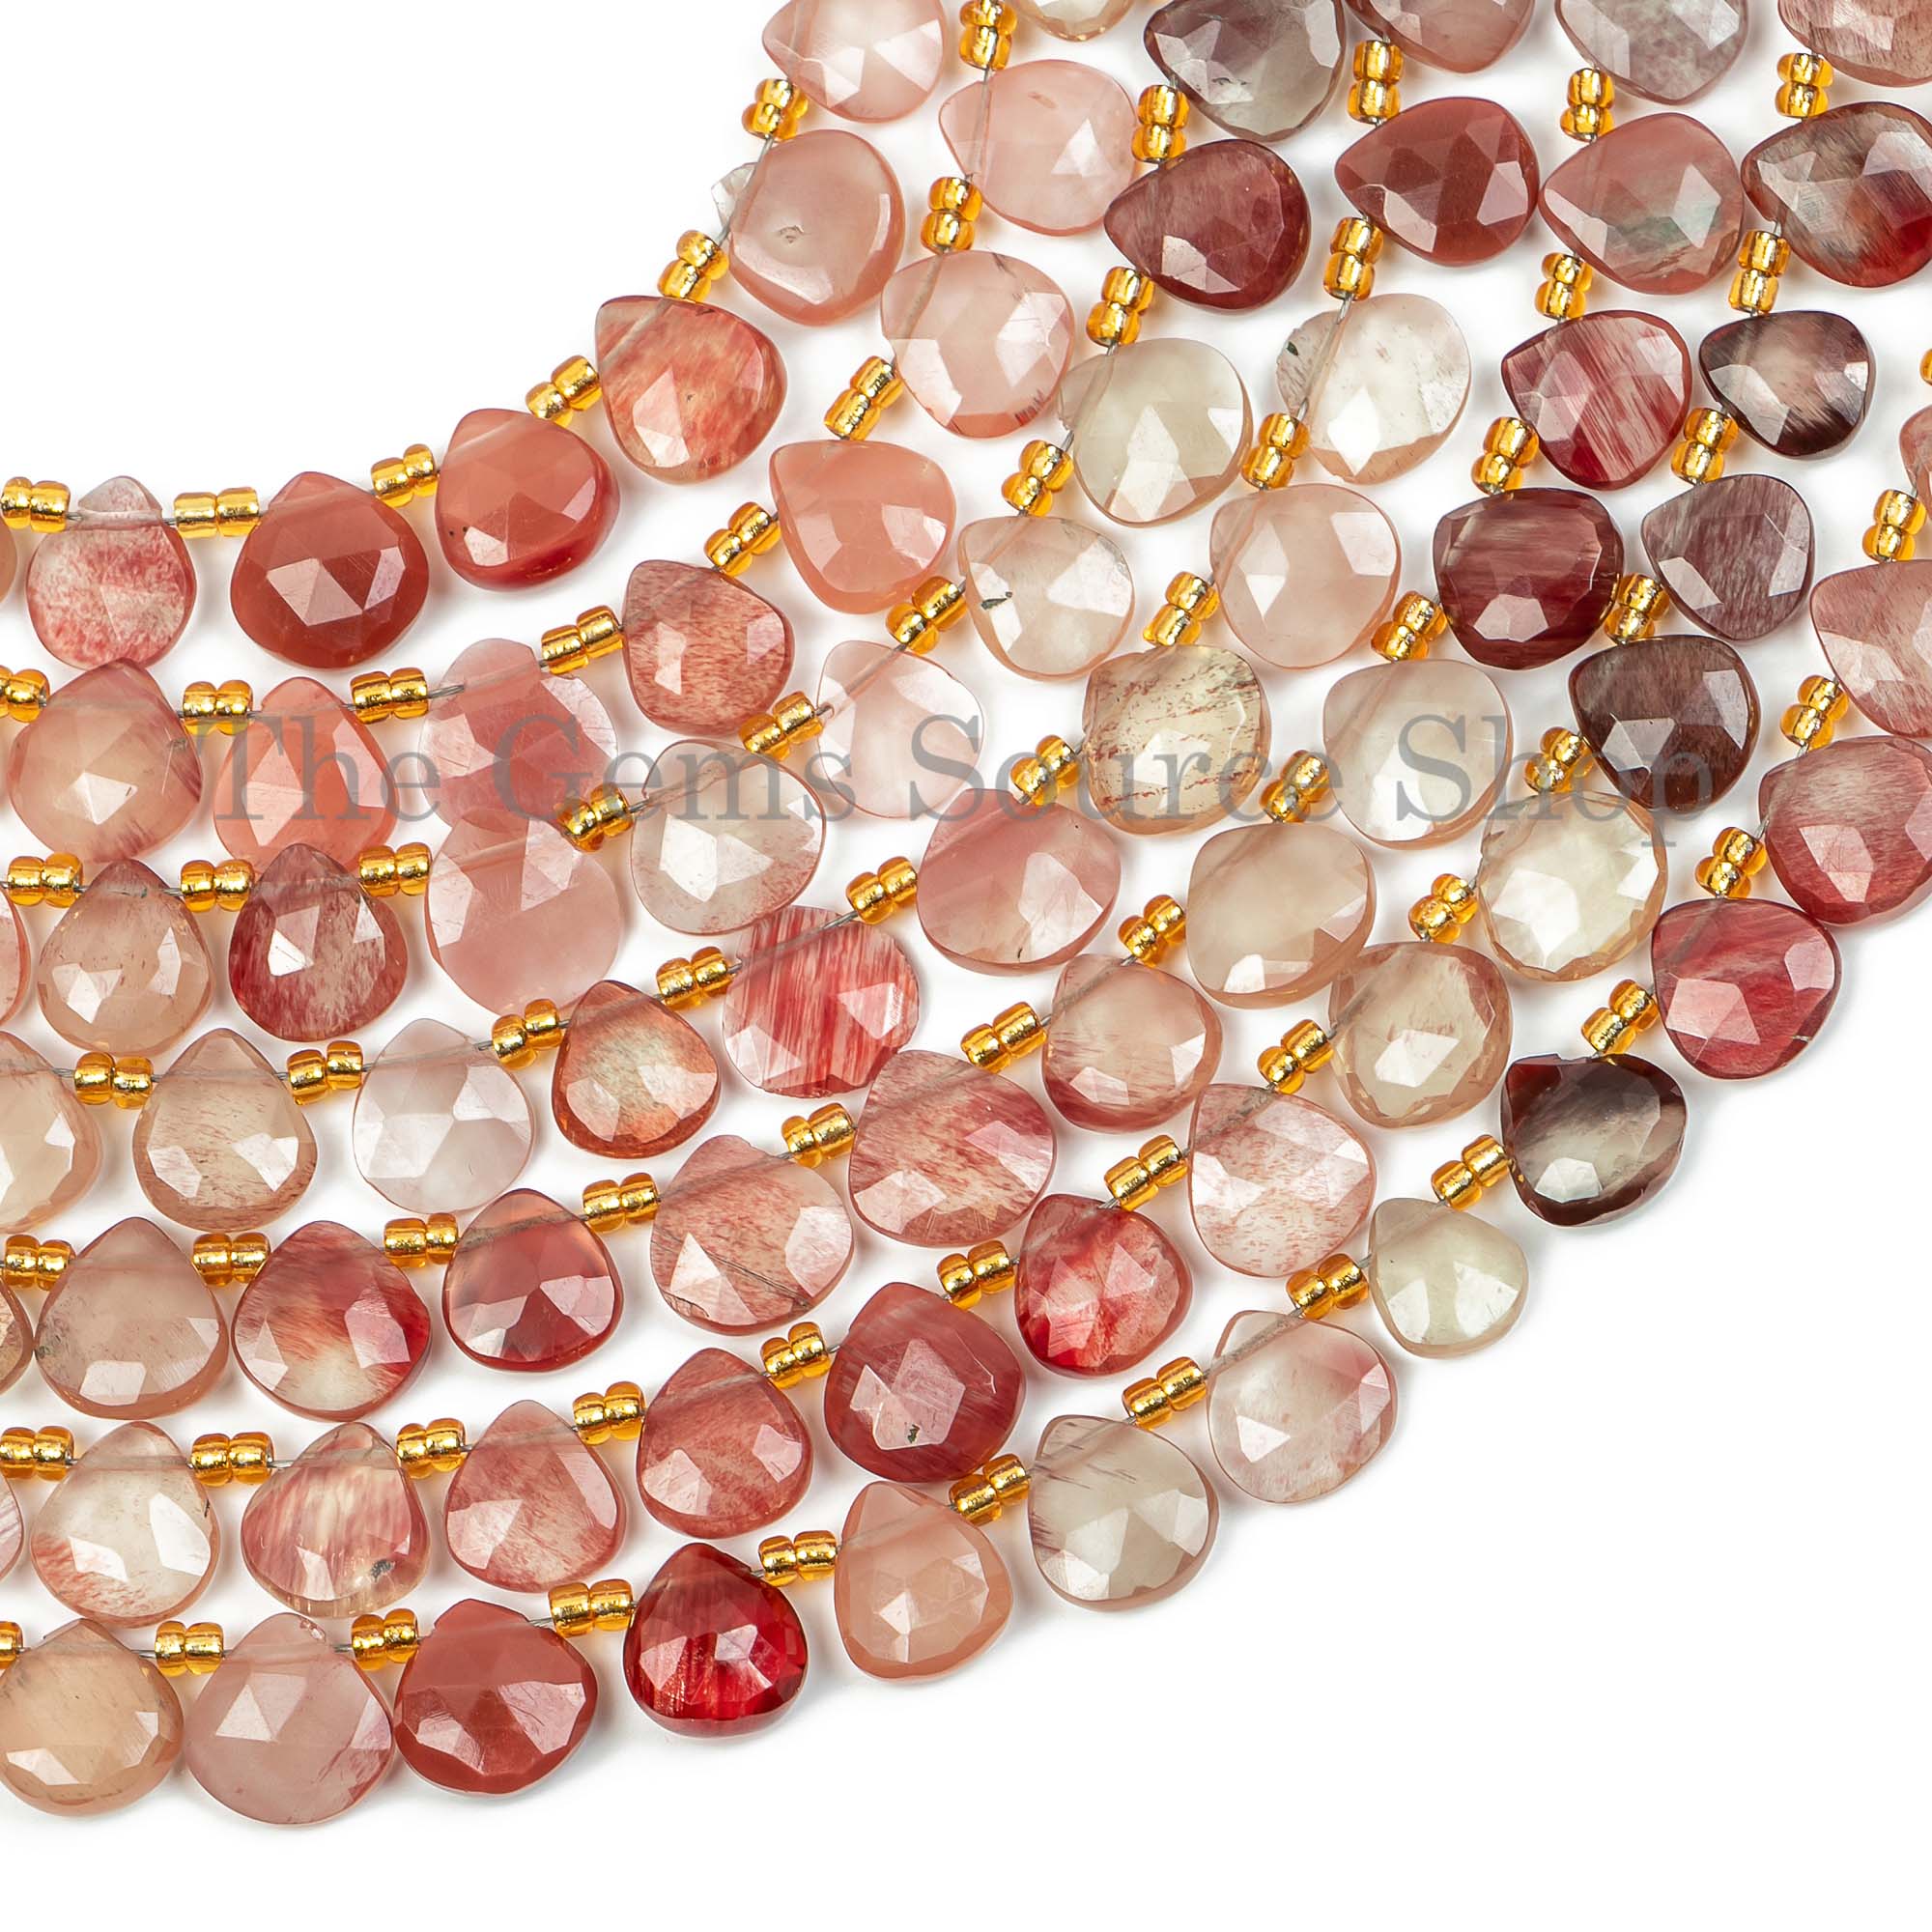 Andesine Labradorite Faceted Heart Briolette, Gemstone Heart Beads, Labradorite Beads